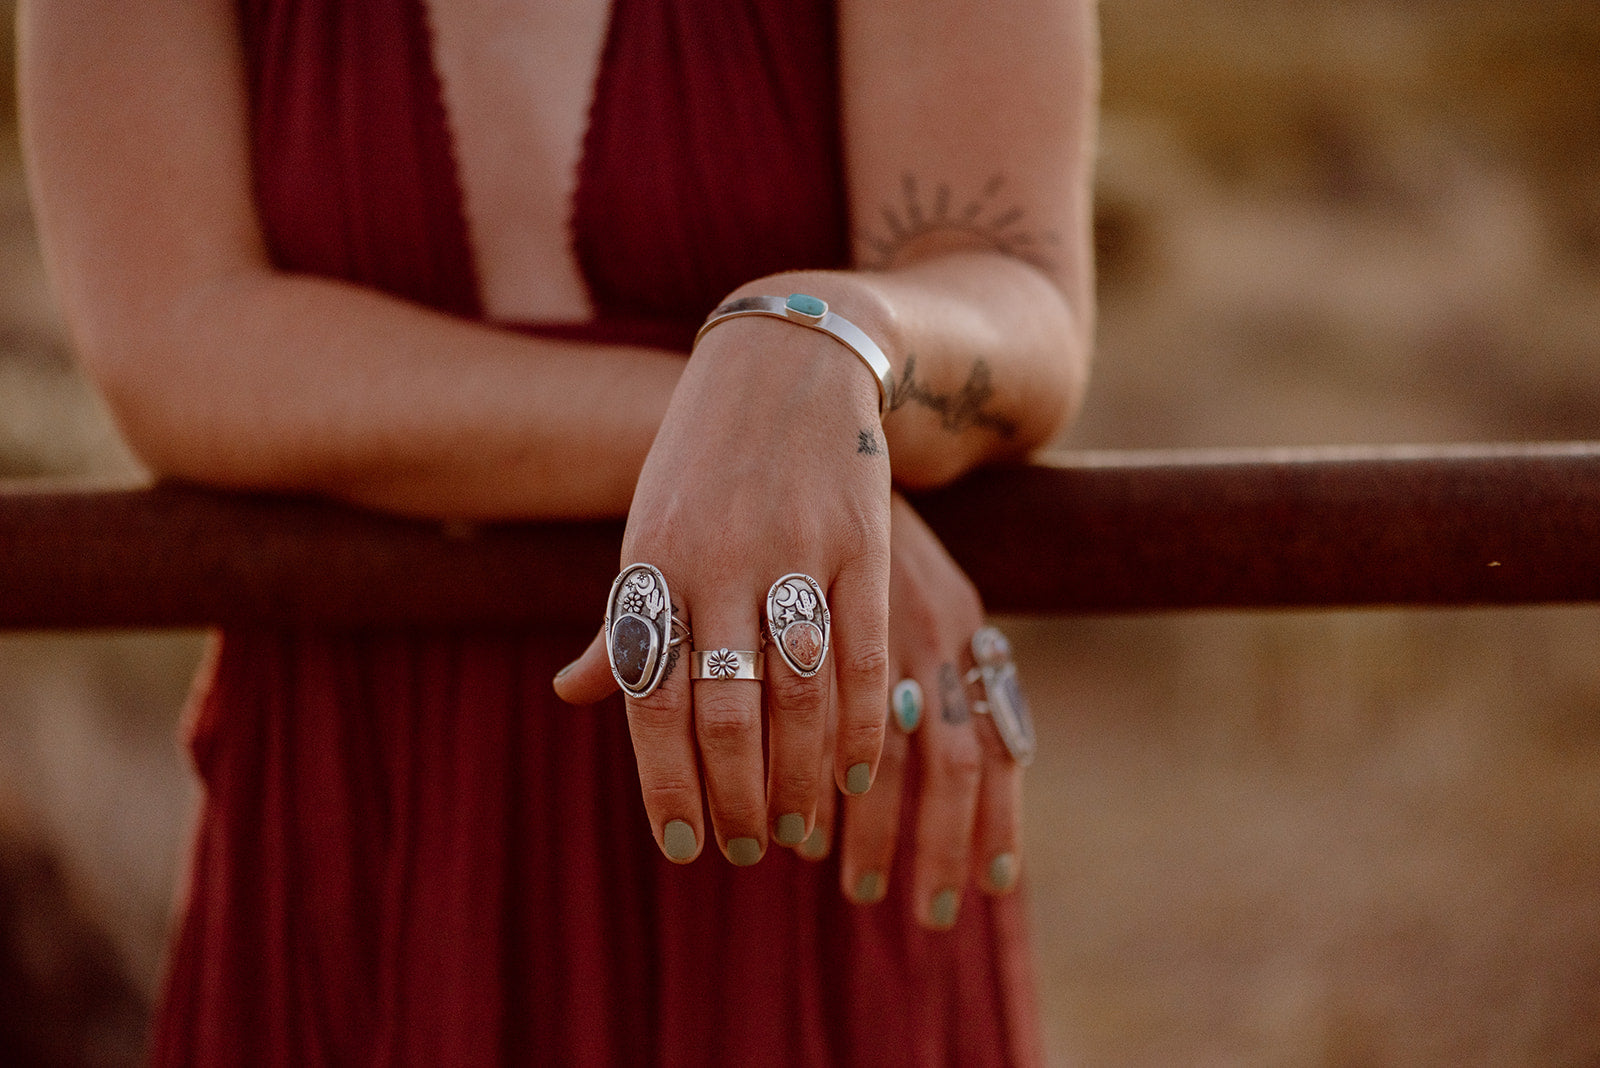 Desert Night Opal Ring - Size 6.25